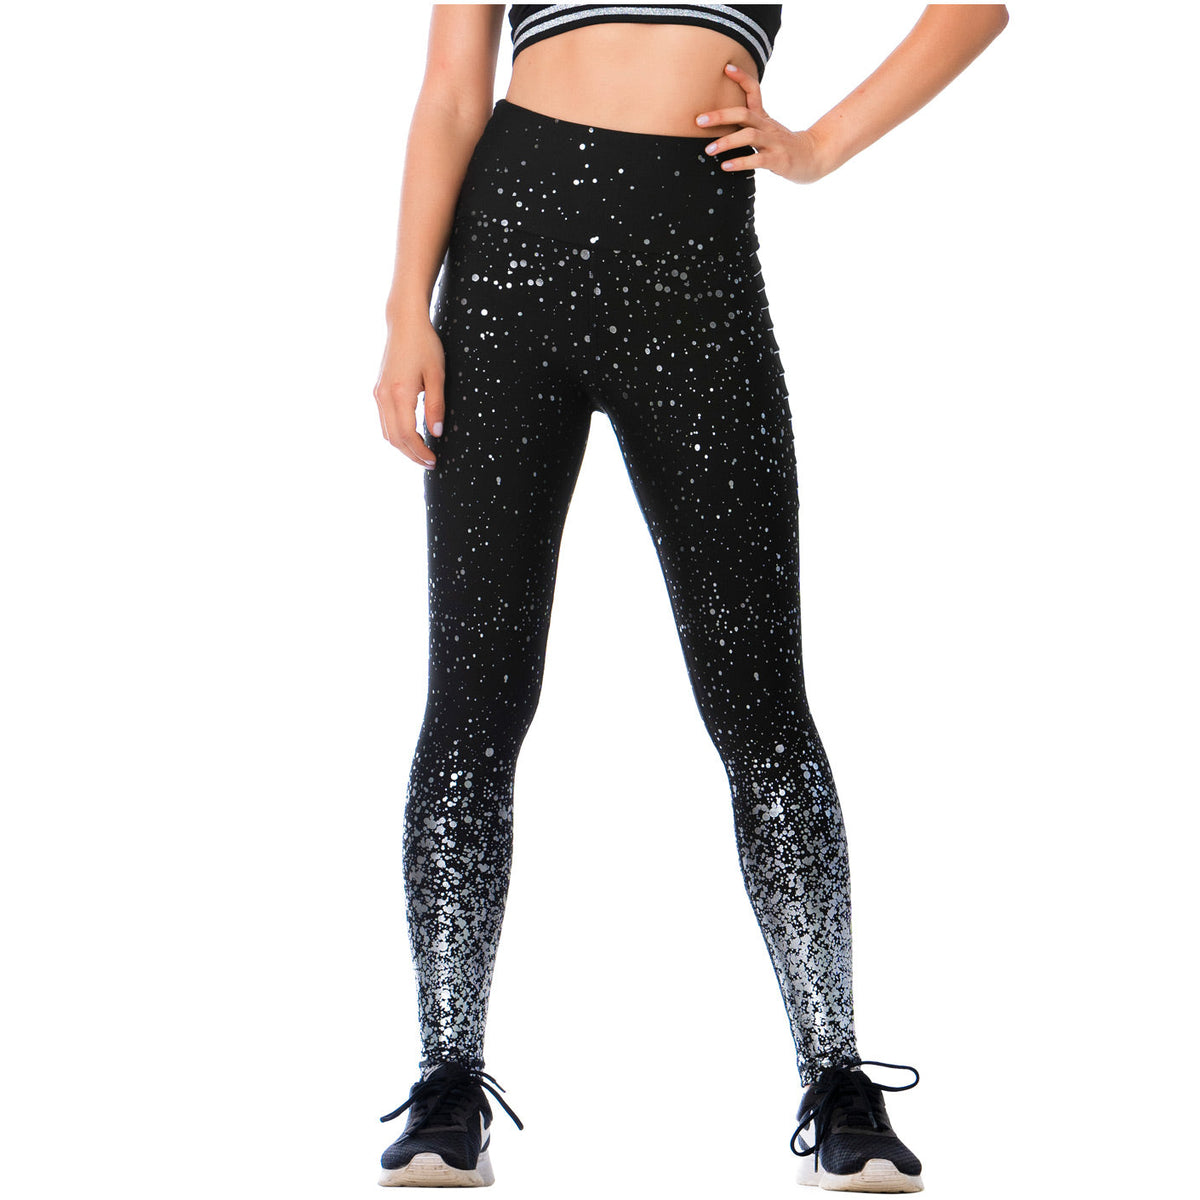 FLEXMEE 946166  High-Waisted Shimmer Print Black Gym Leggings